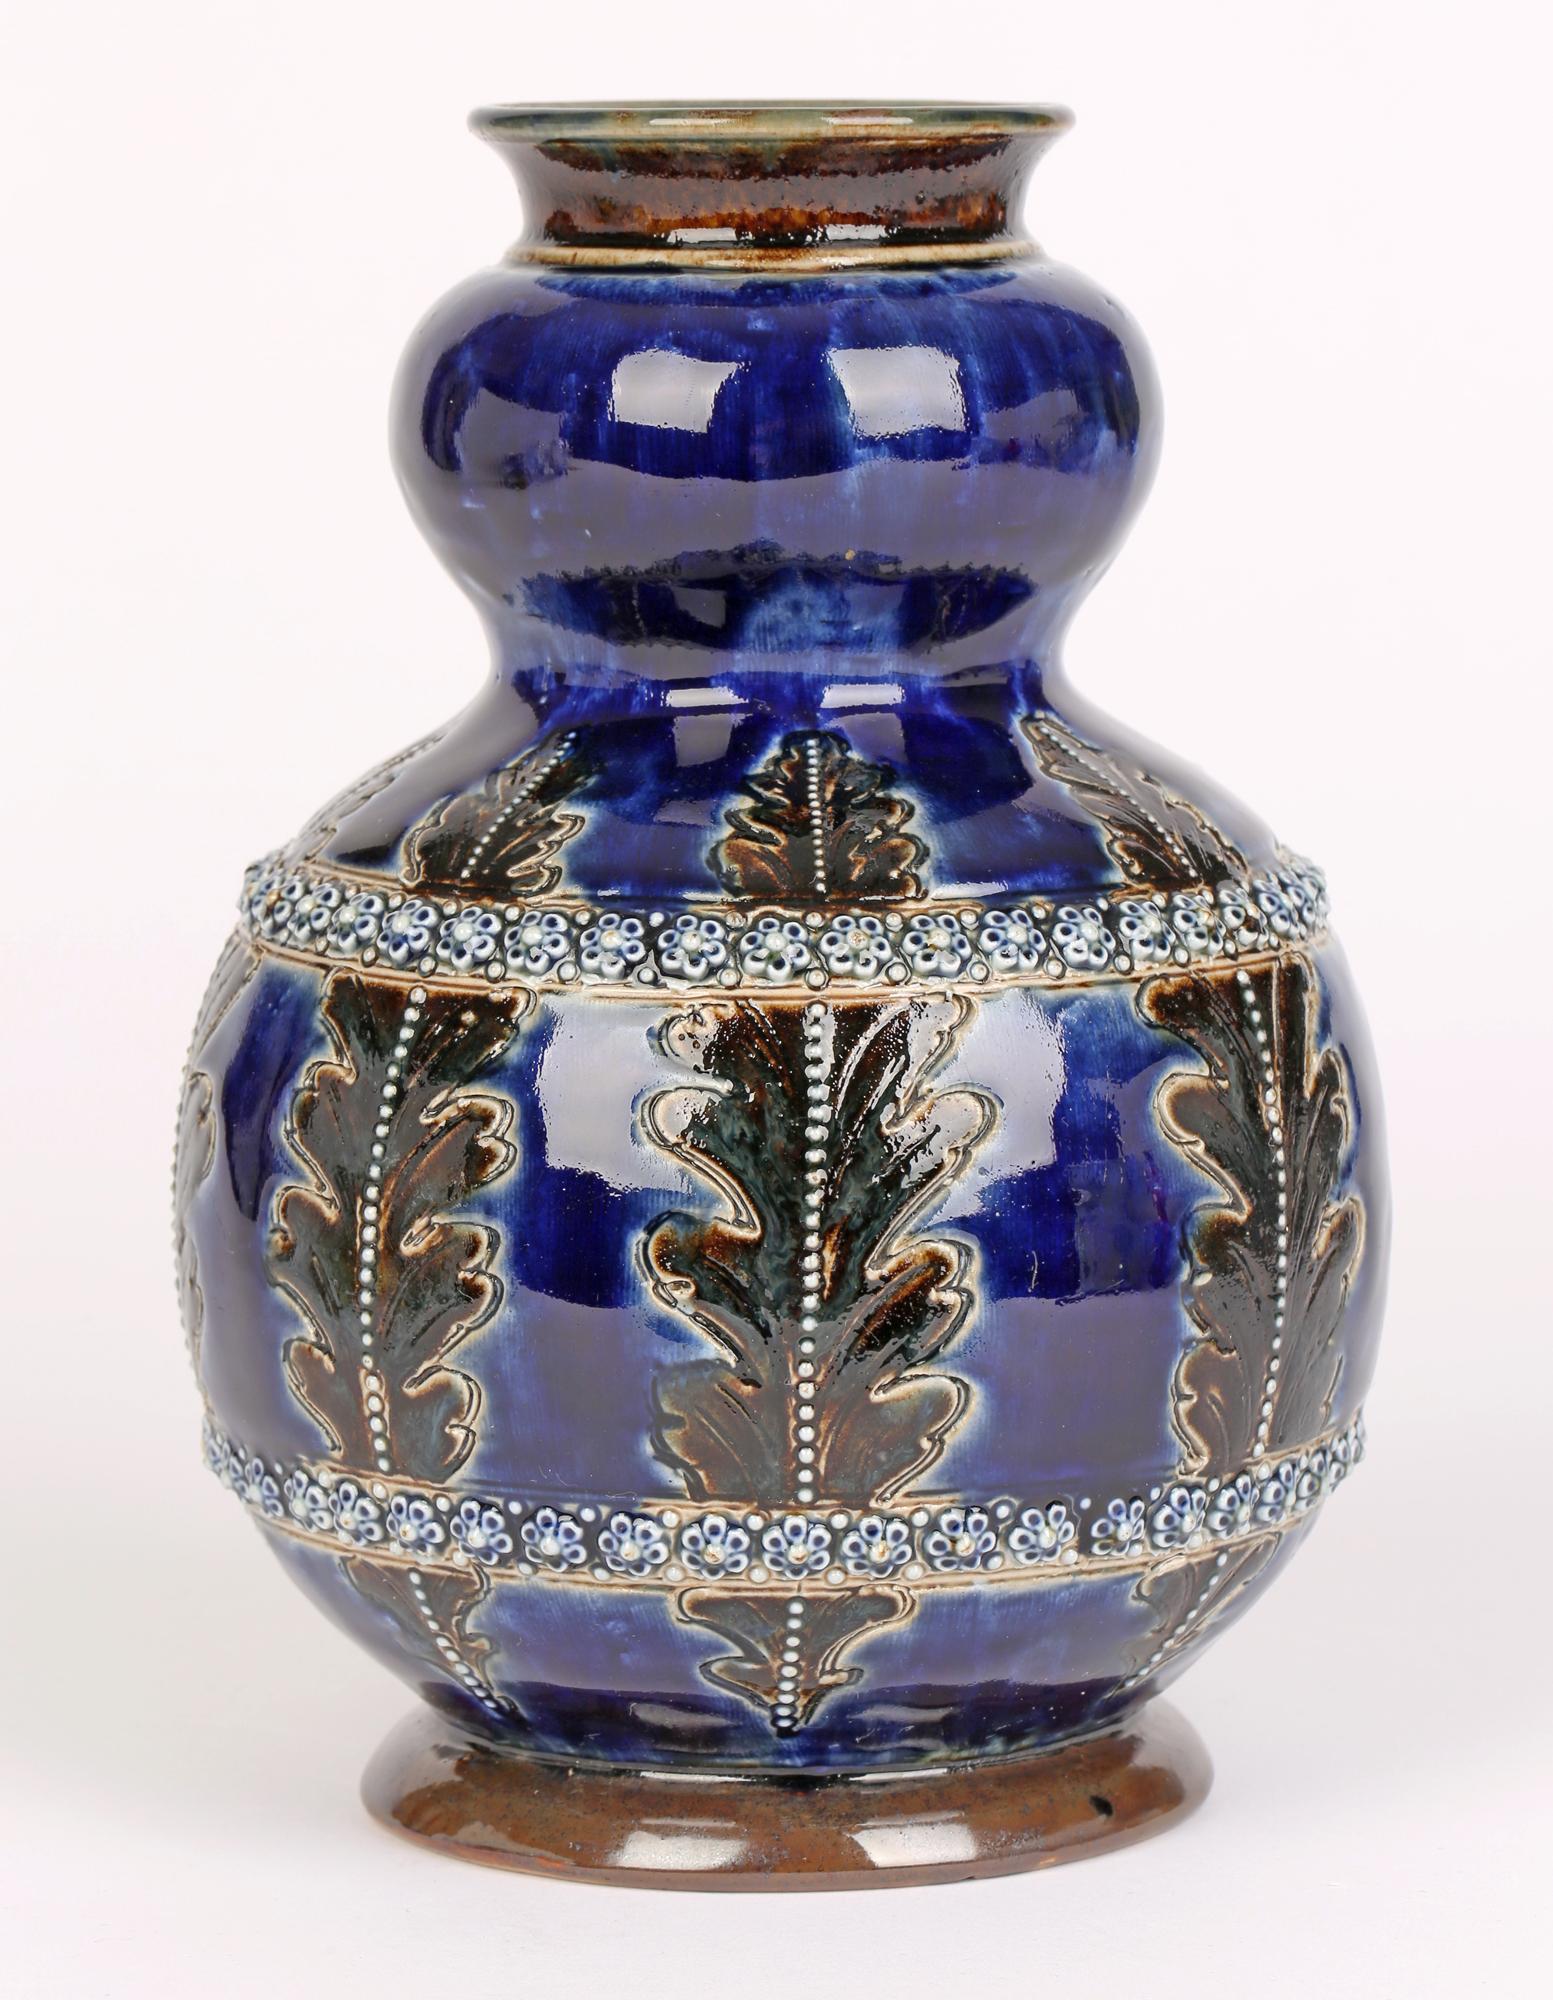 George Tinworth for Doulton Lambeth Leaf & Floral Design Art Pottery Vase 1877   2